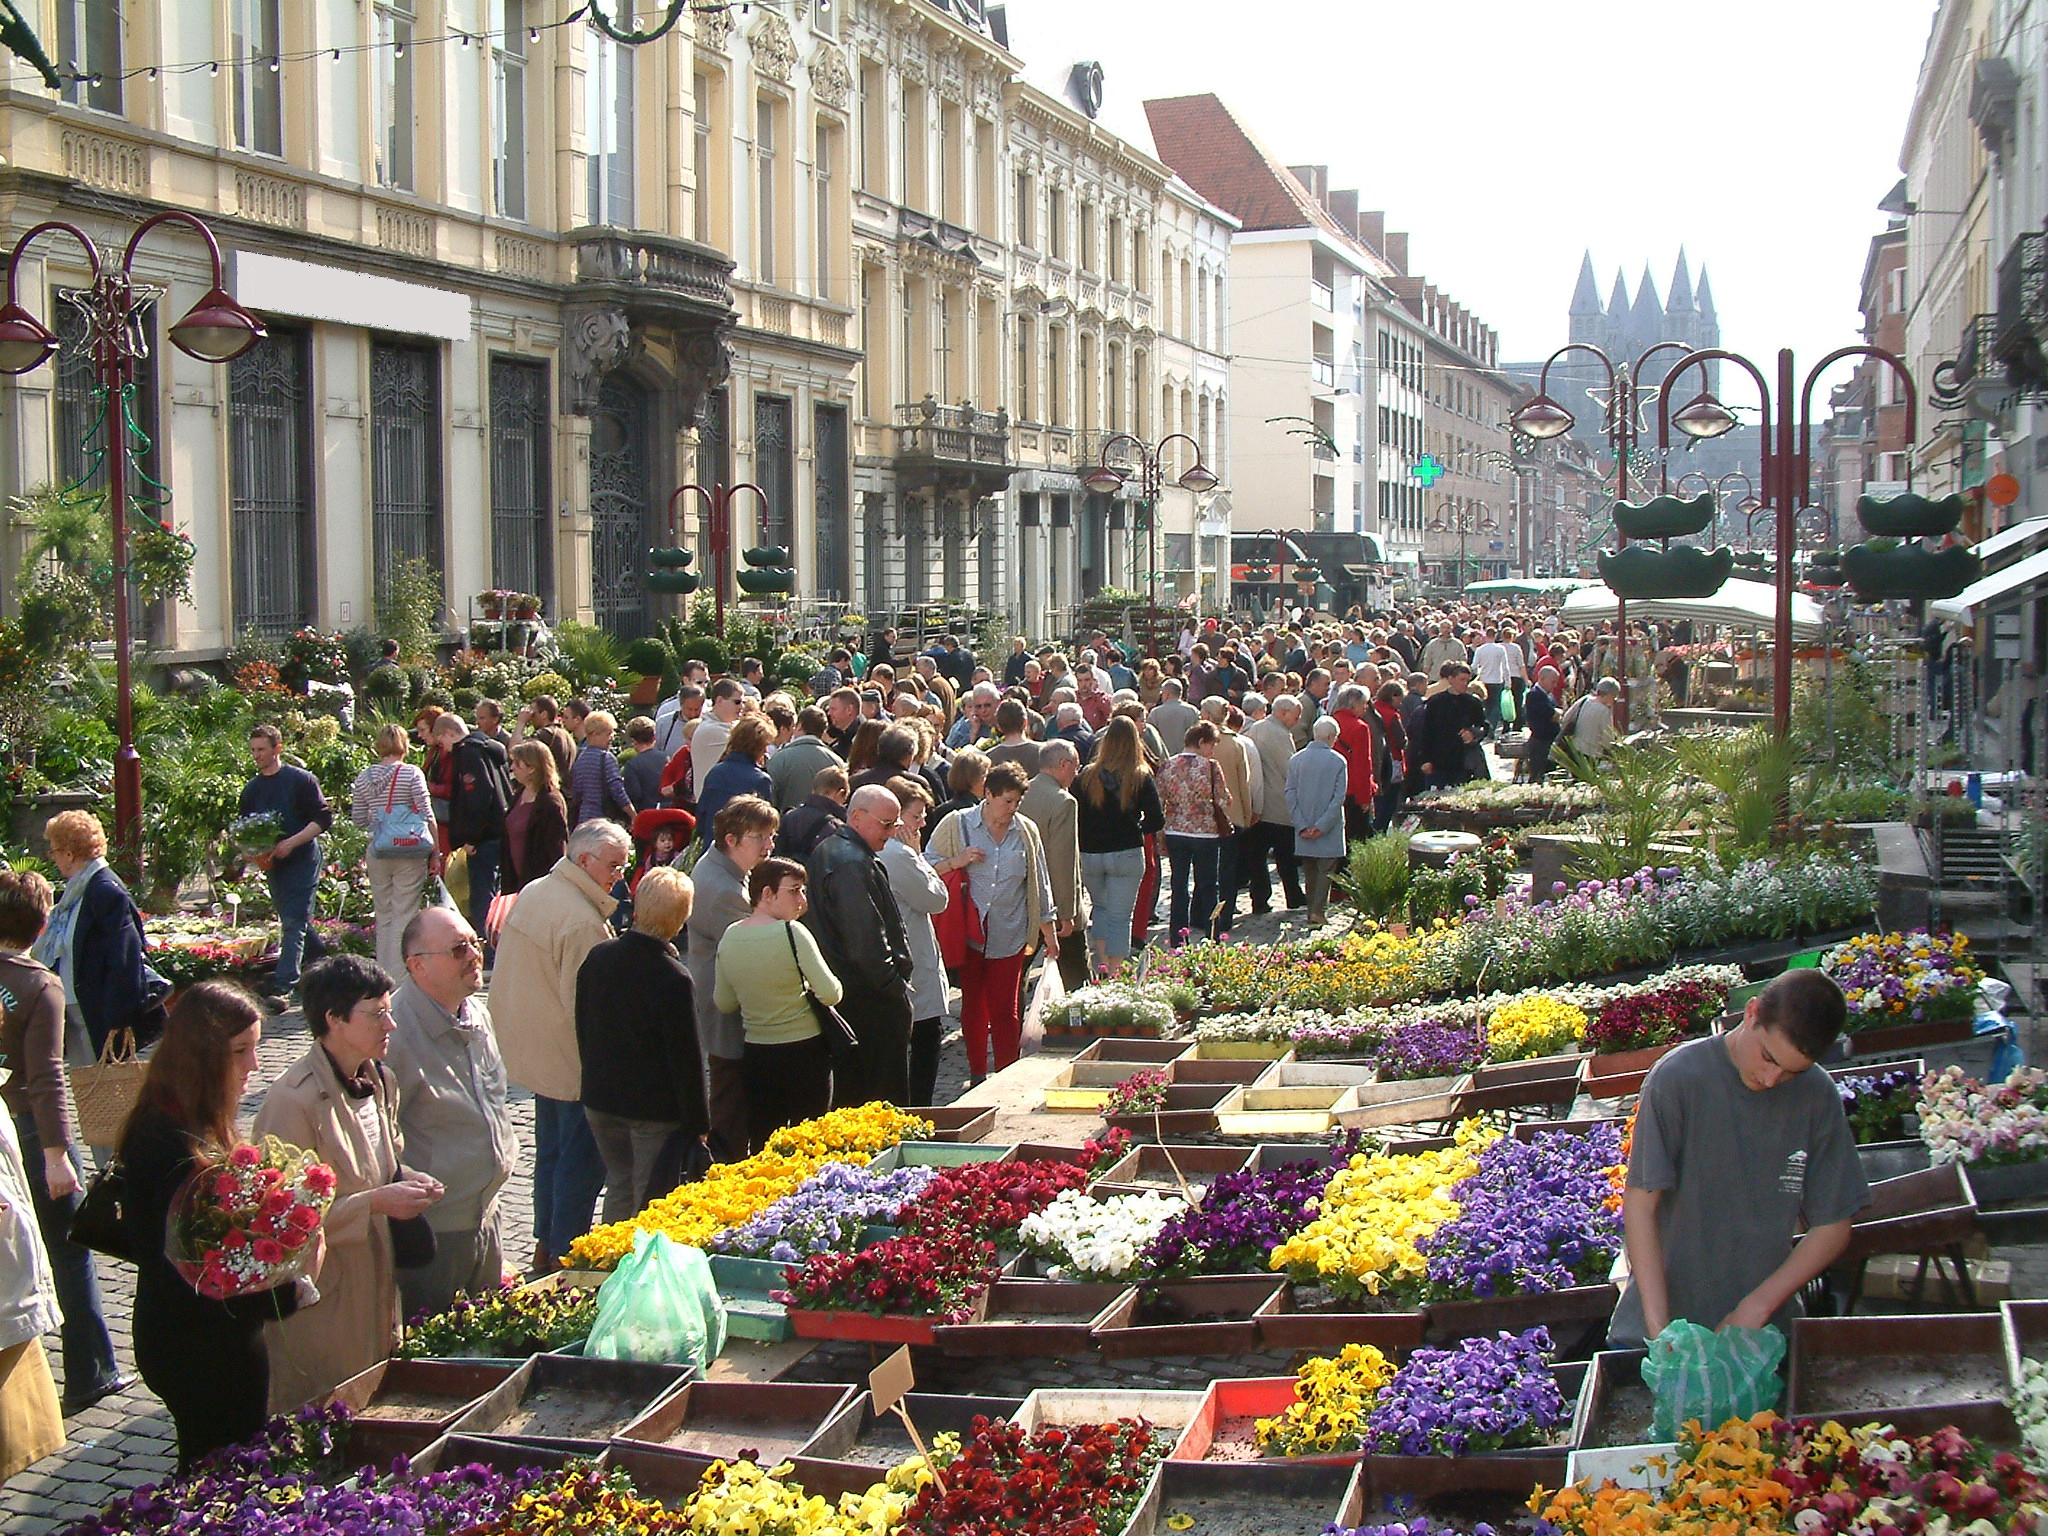 Marché aux fleurs dans les rues de Tournai